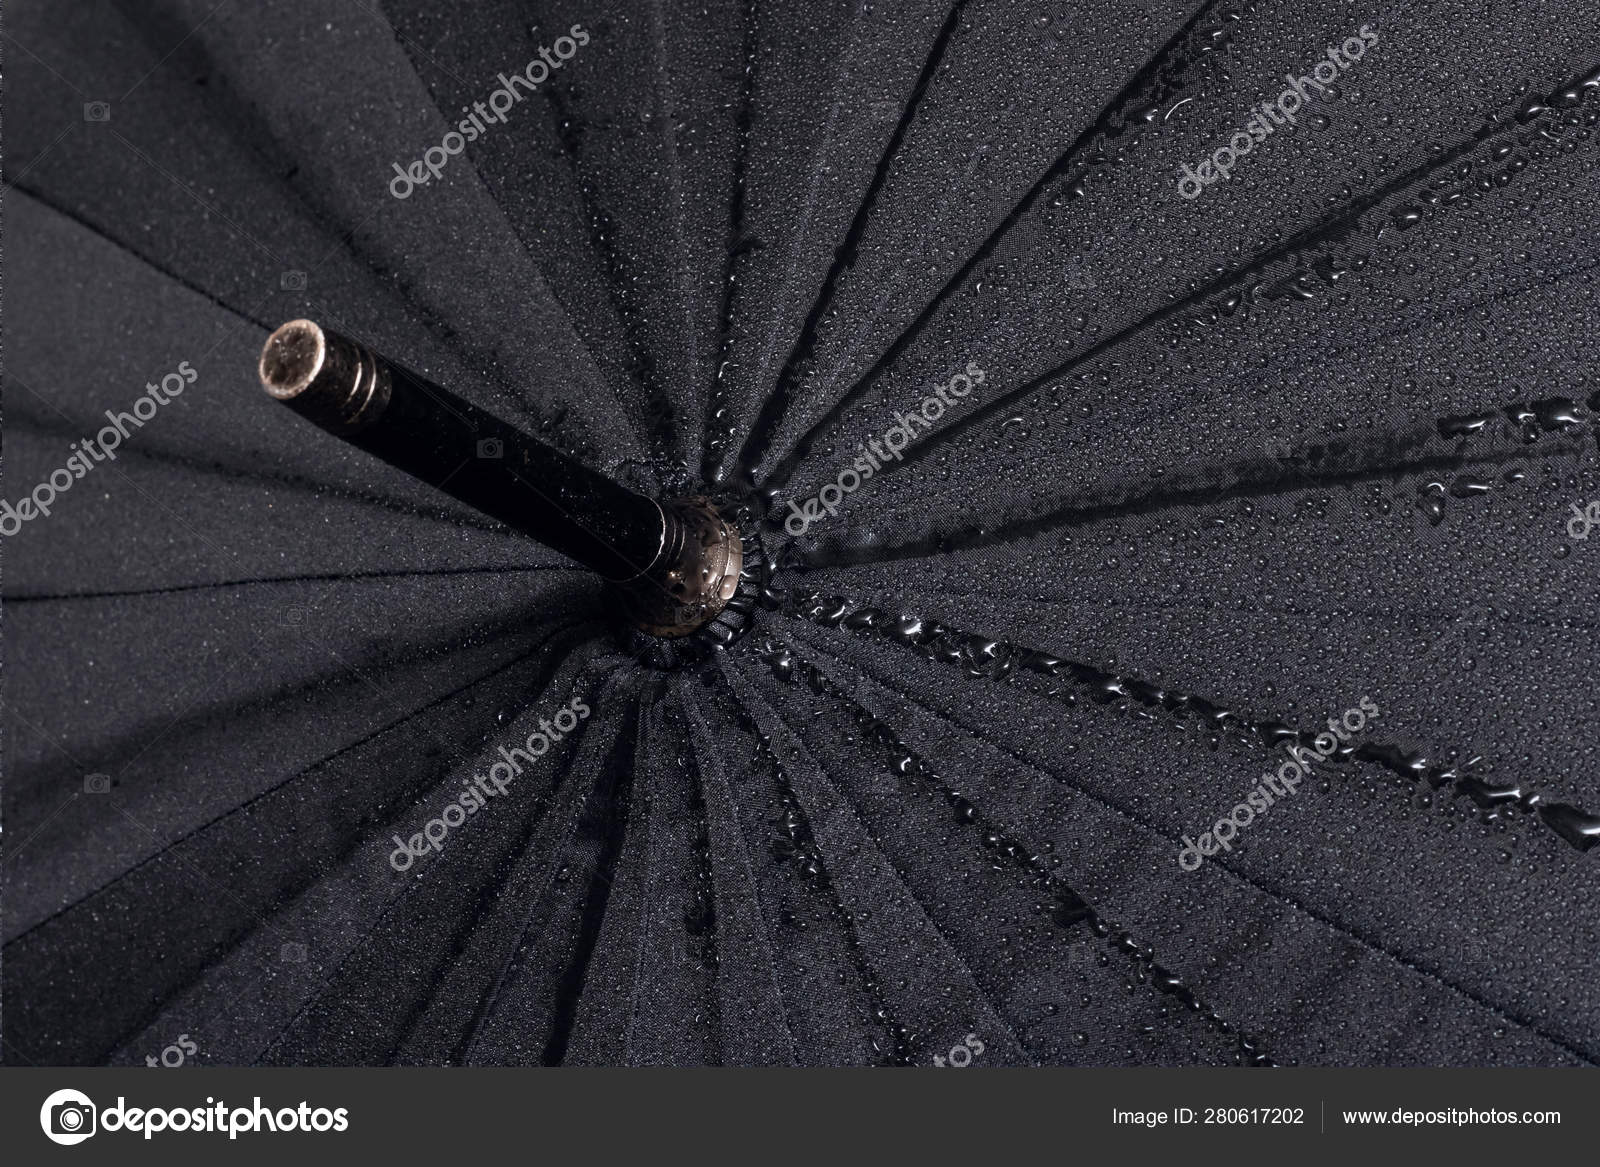 black umbrella top